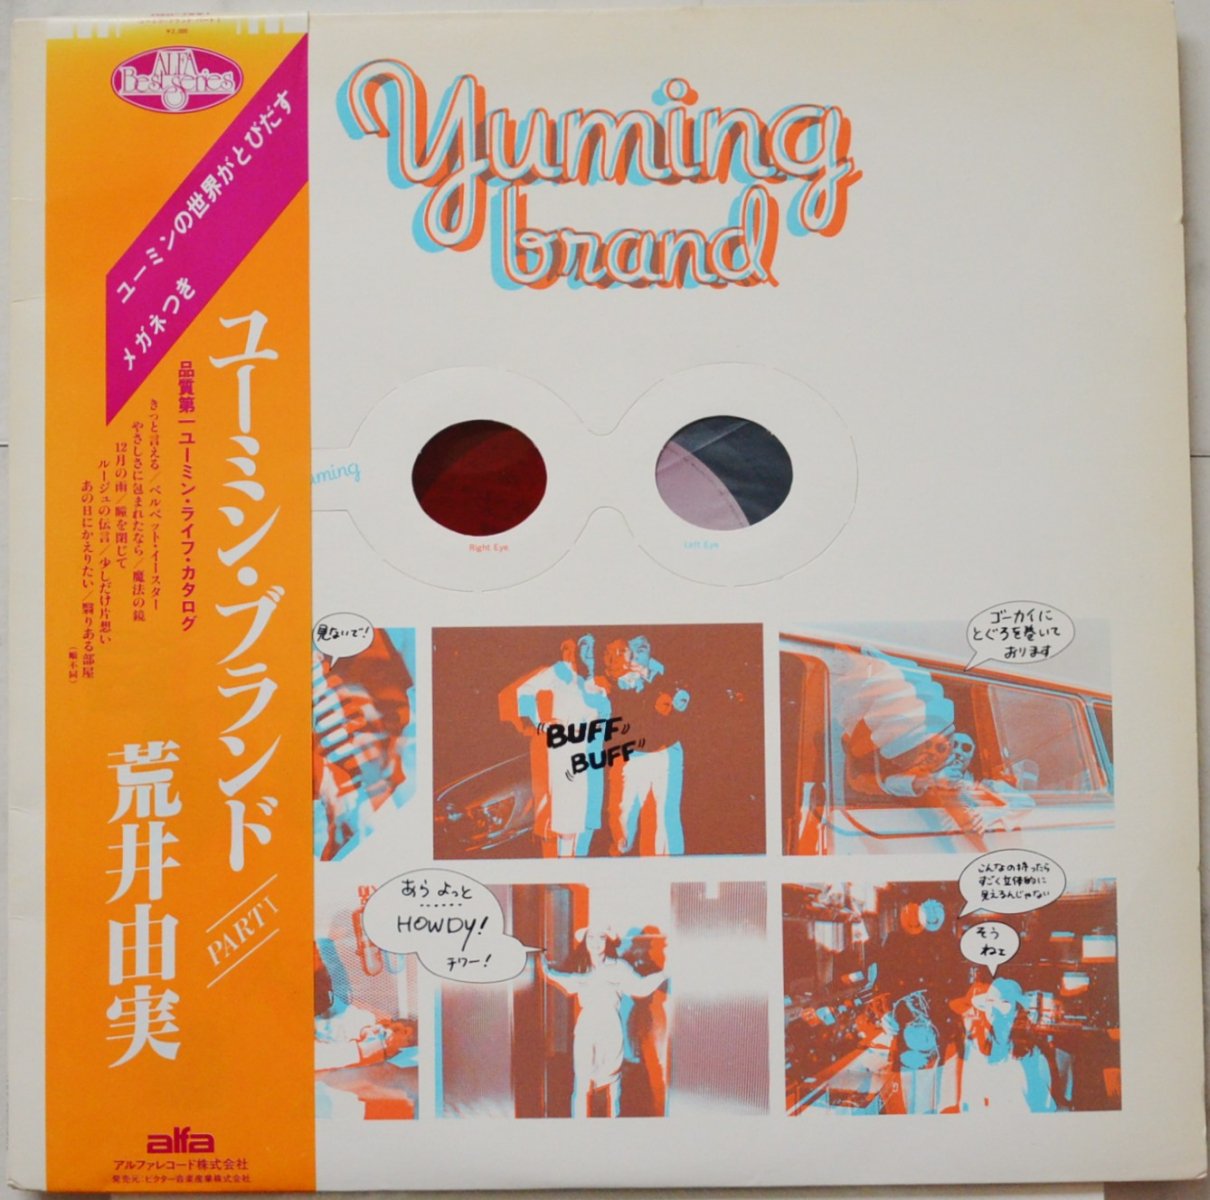 荒井由実 YUMI ARAI / ユーミン・ブランド YUMING BRAND (LP) - HIP 